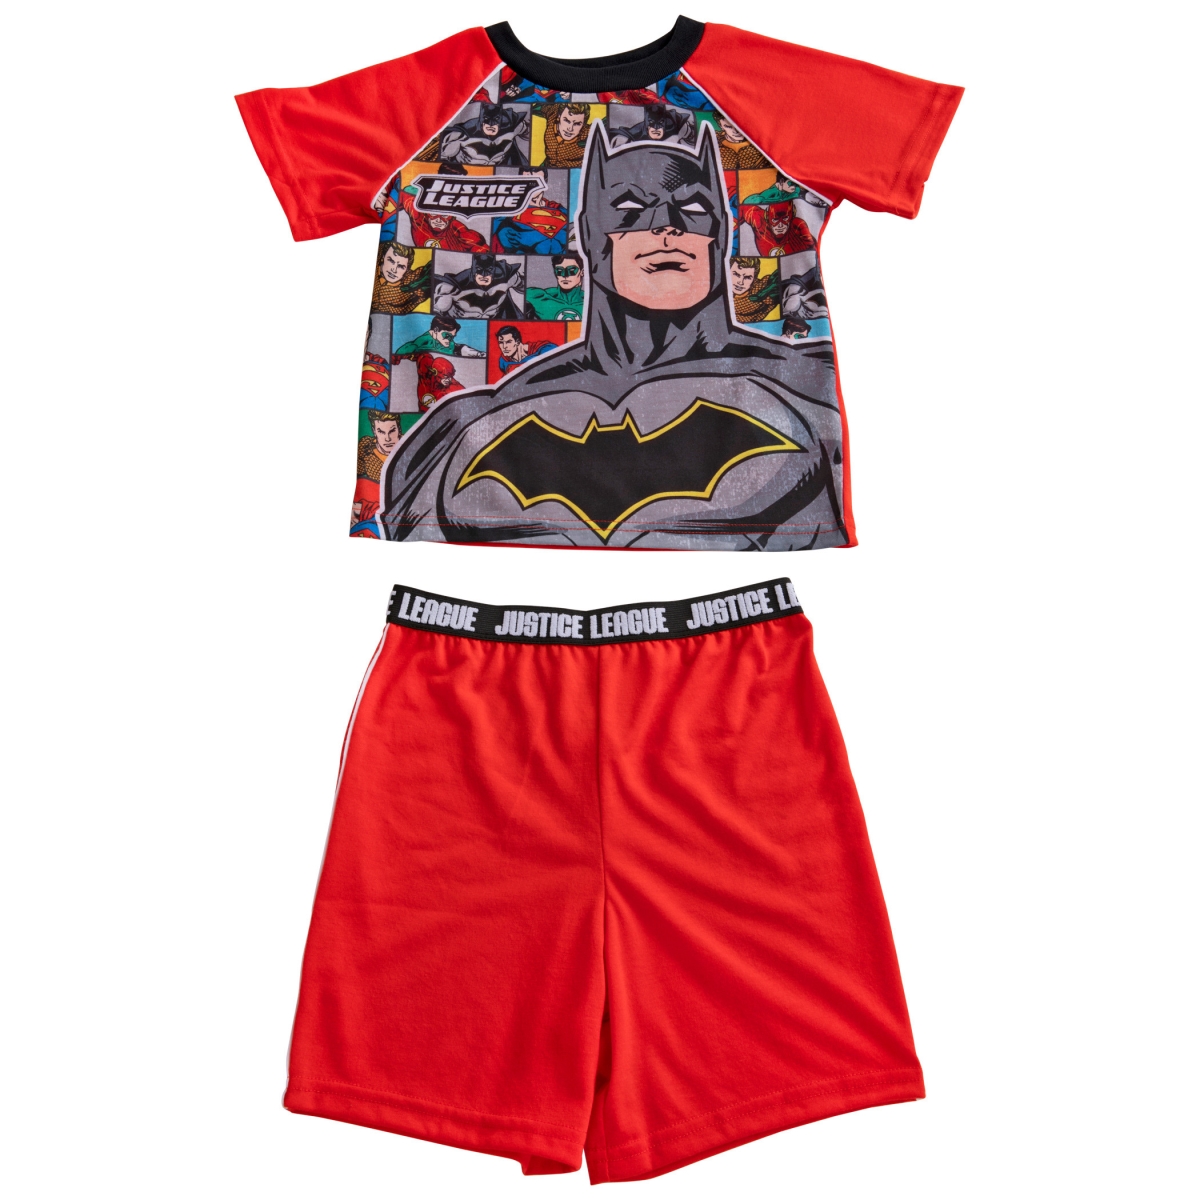 Picture of Batman 830398-size4 Batman & The Justice League Pajama Shirt & Shorts Set - Size 4